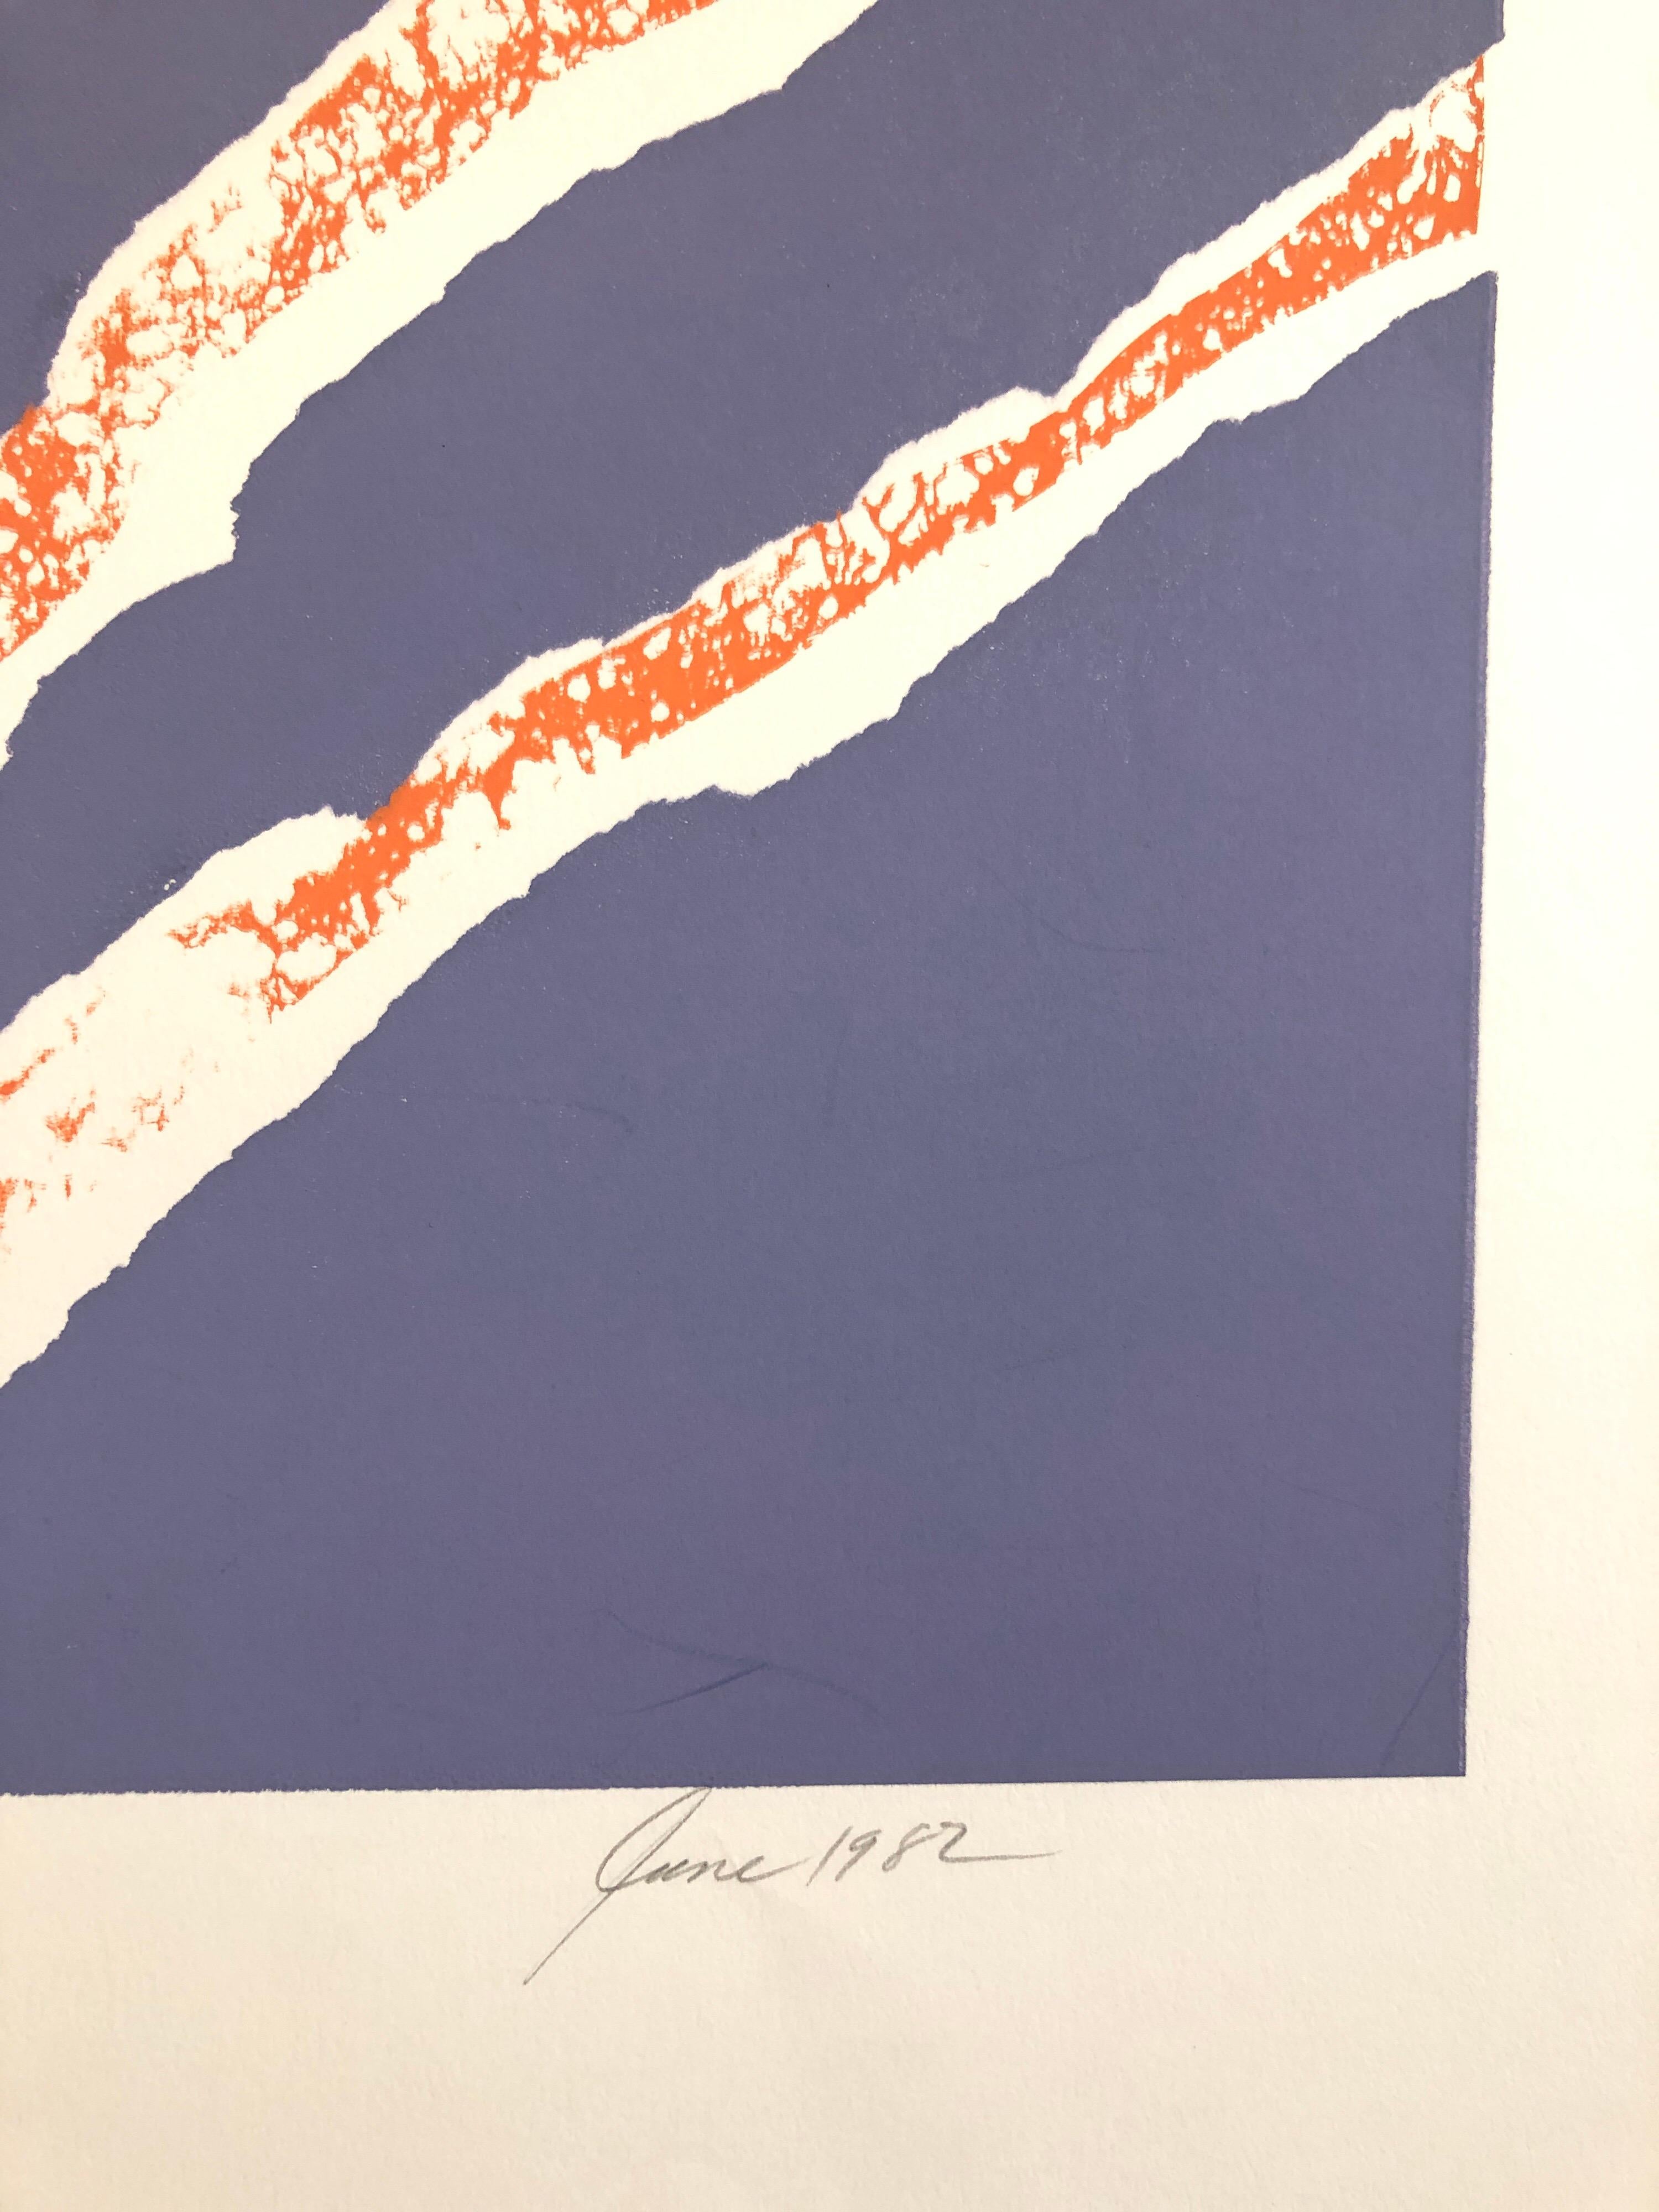 Motiv (Abstrakt) in orange und blau abstrakt.
Aus der kleinen Auflage von 10. von 1982. Ich bin mir nicht sicher, ob es sich um einen Holzschnitt oder Holzschnitt oder einen Siebdruck oder eine Kombination davon handelt. 

Viola Burley Leak,